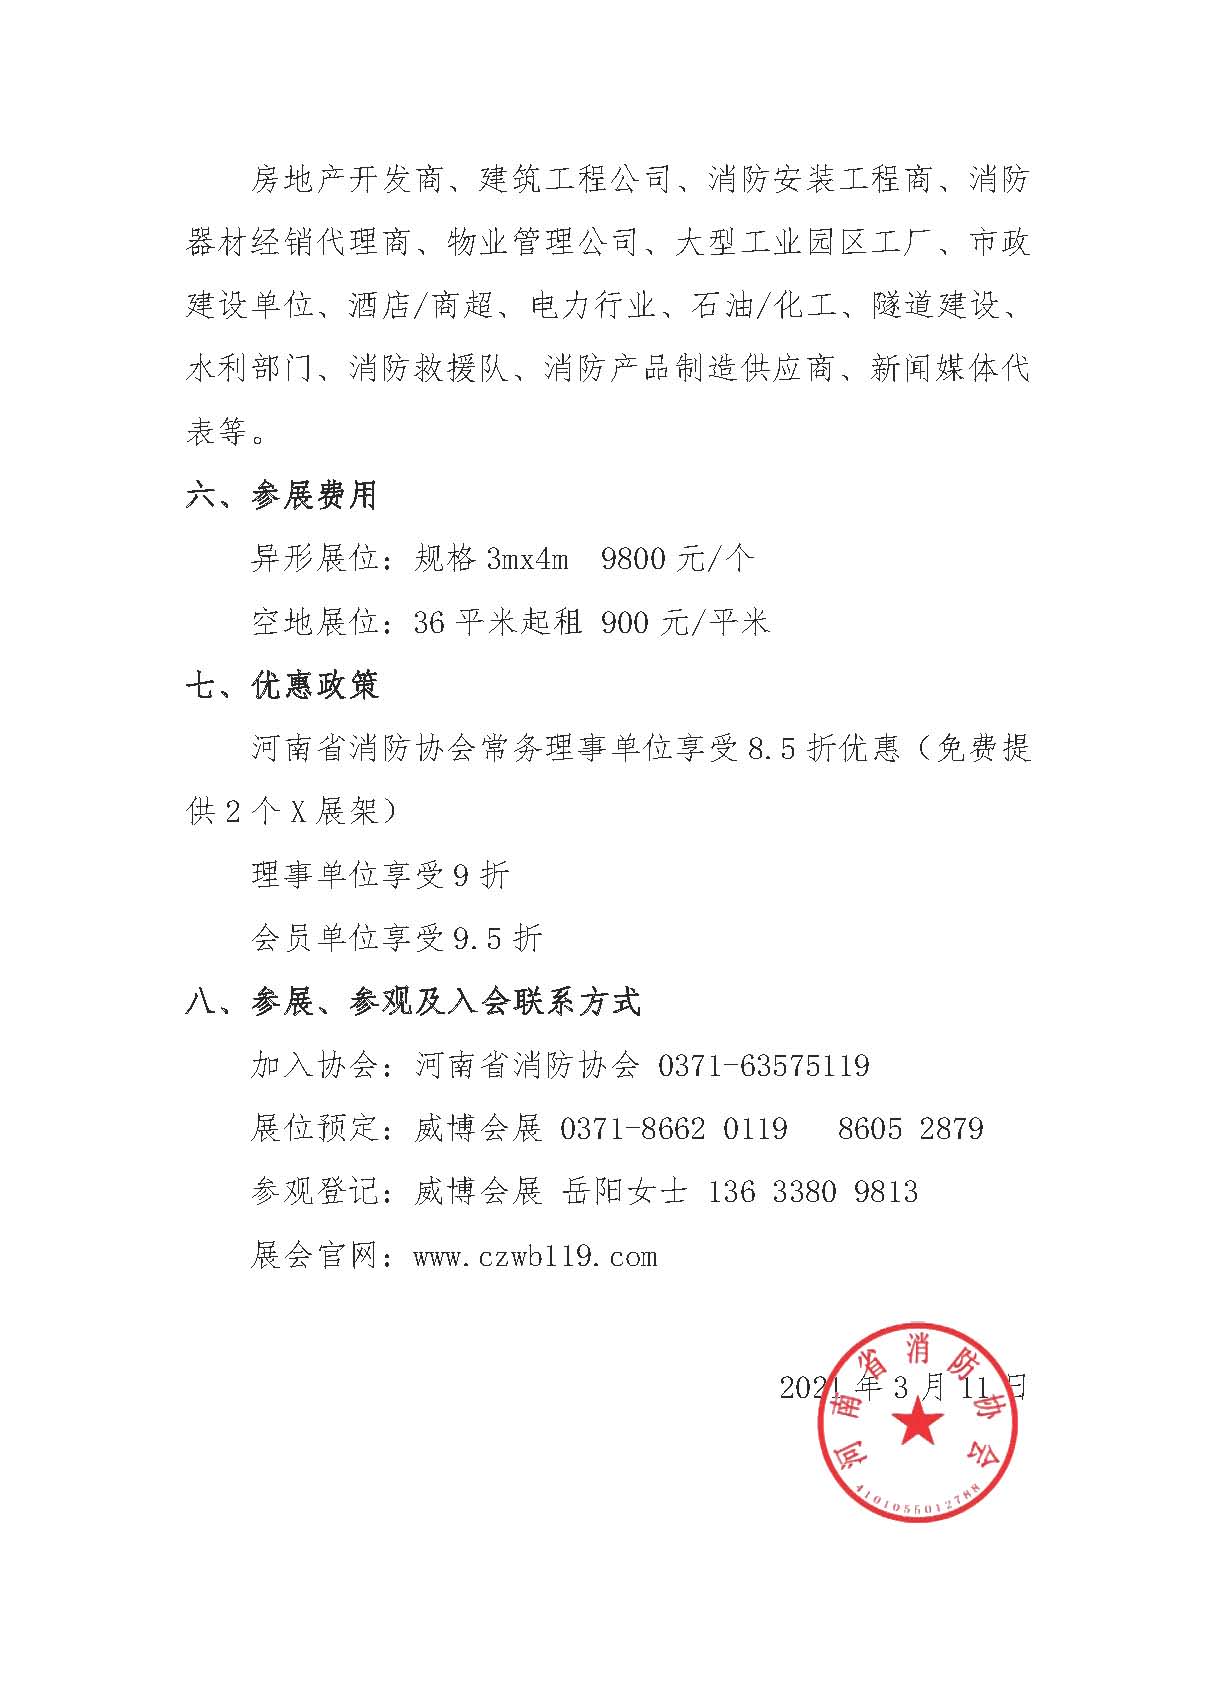 河南省消防协会关于邀请参加“2021年第12届郑州国际消防展”的通知